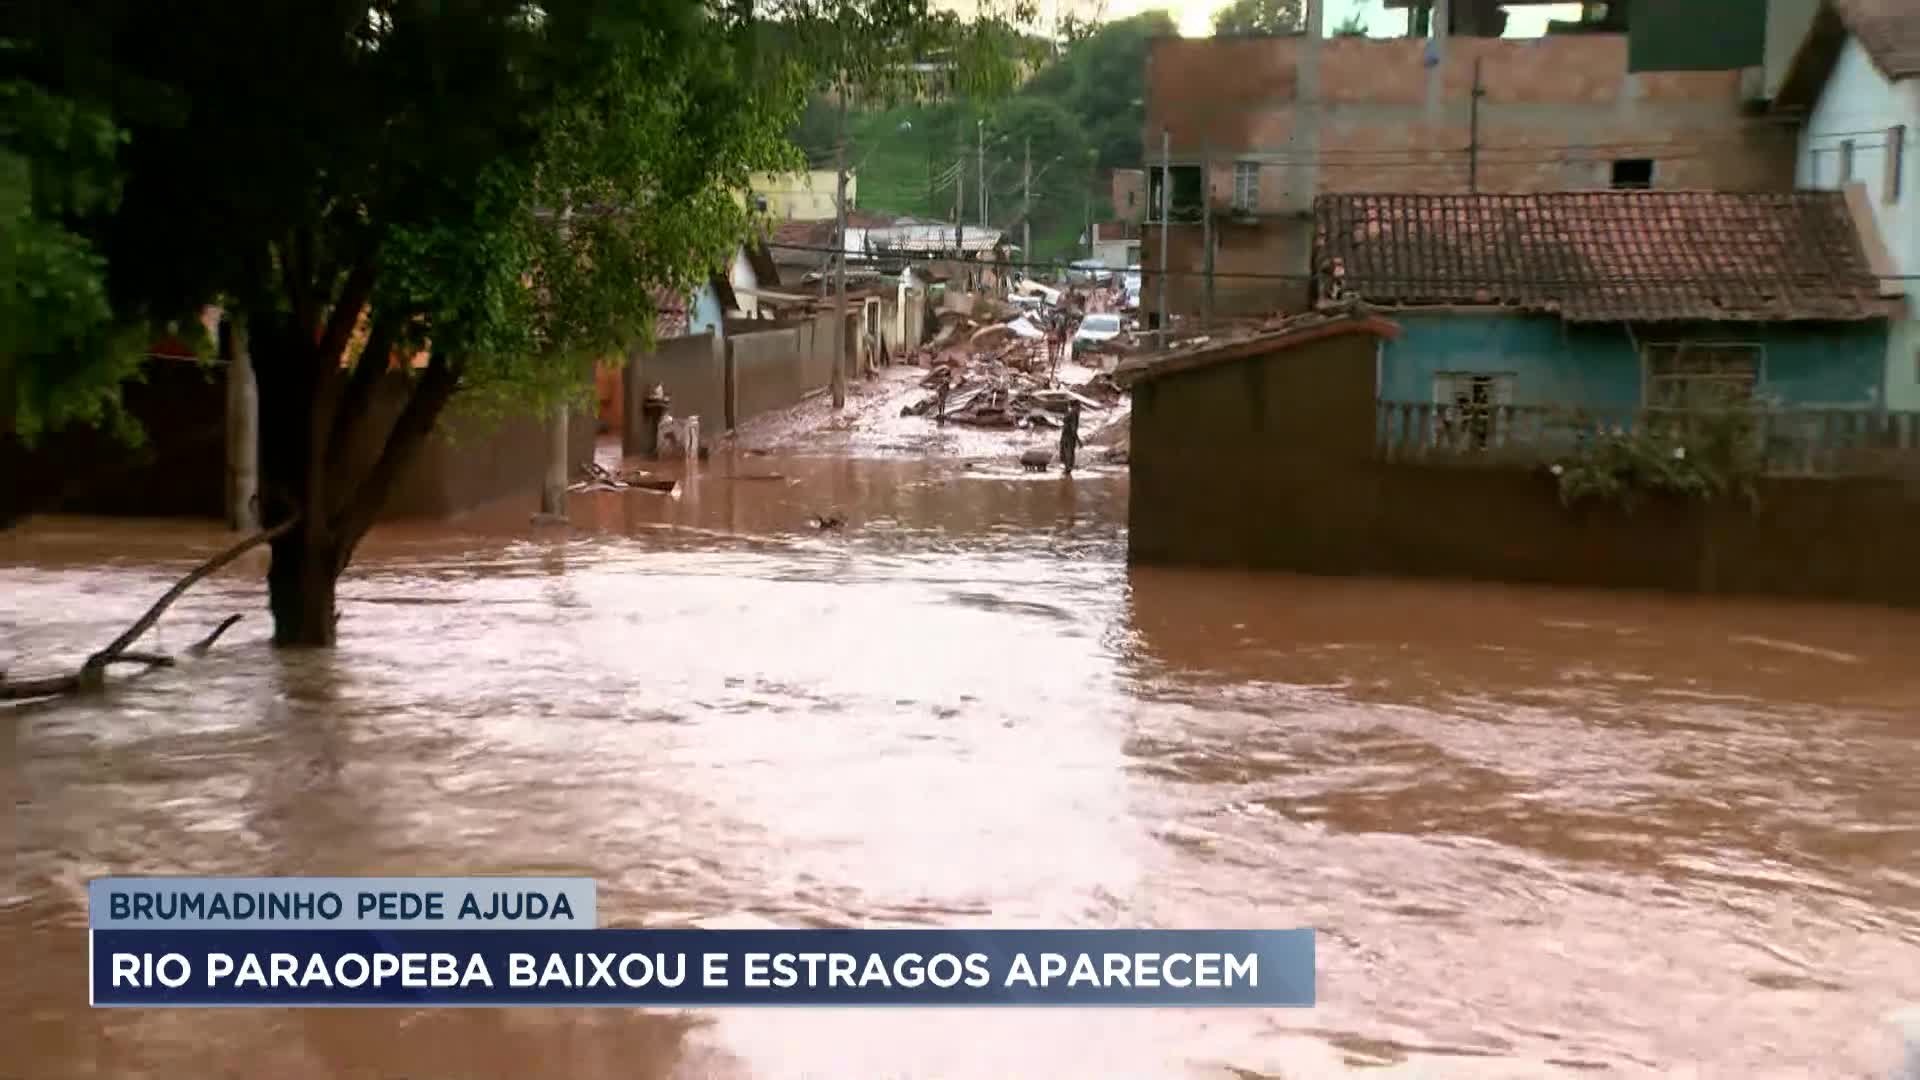 Vídeo: Moradores de Betim (MG) denunciam falta de ajuda após chuvas